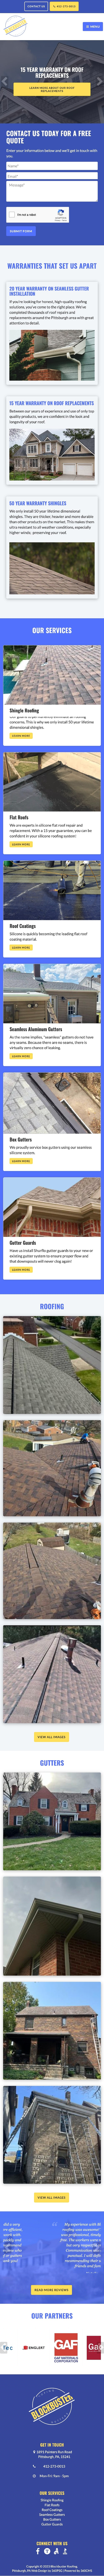 Blockbuster Roofing Website - Mobile